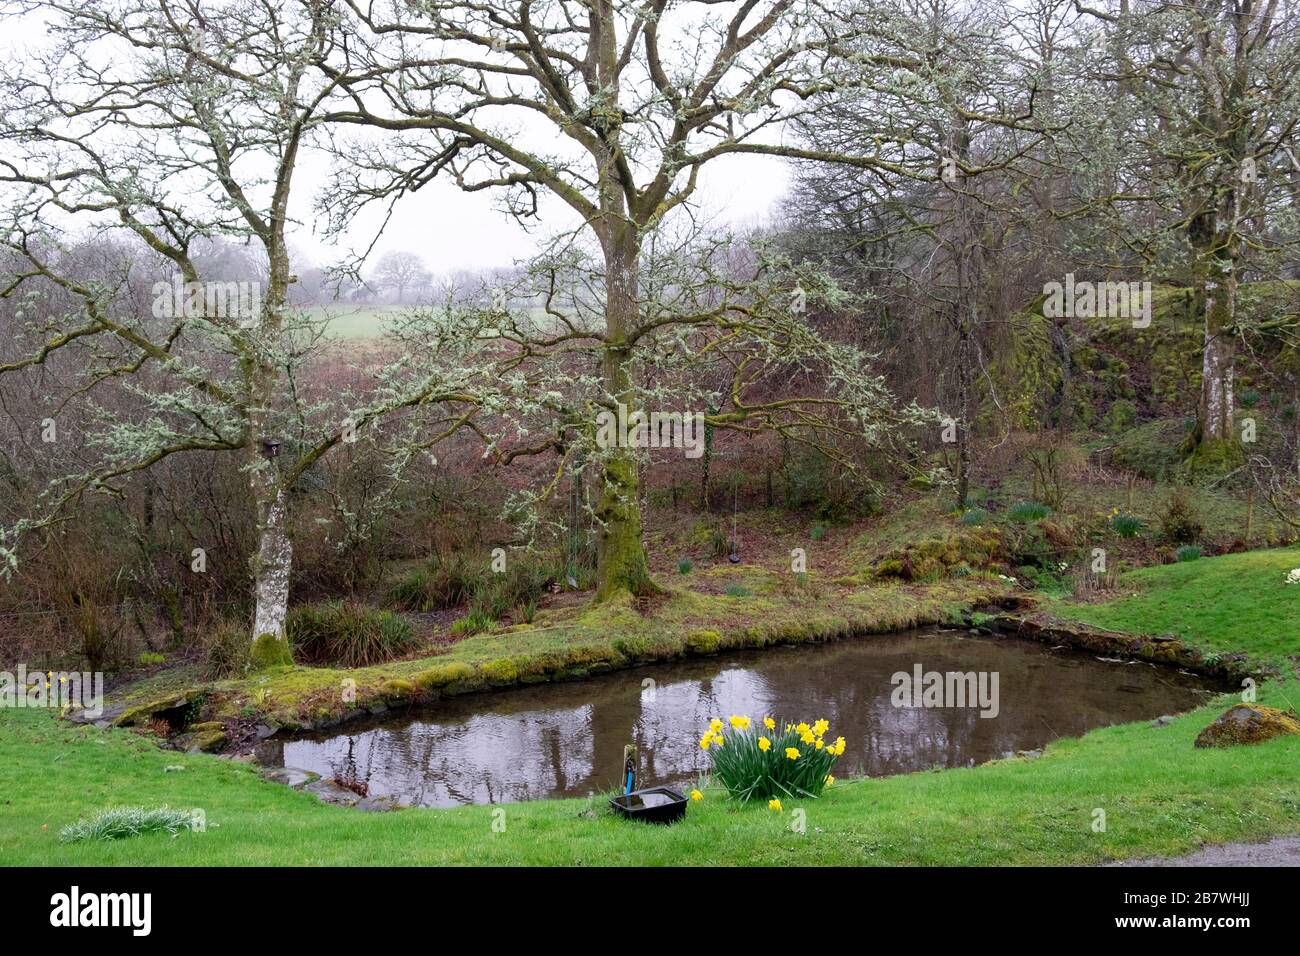 Jardín estanque piscina en marzo de 2020 en el paisaje de principios de primavera con grupa de narcisos y liquen en robles en Carmarthenshire West Wales Reino Unido KATHY DEWITT Foto de stock